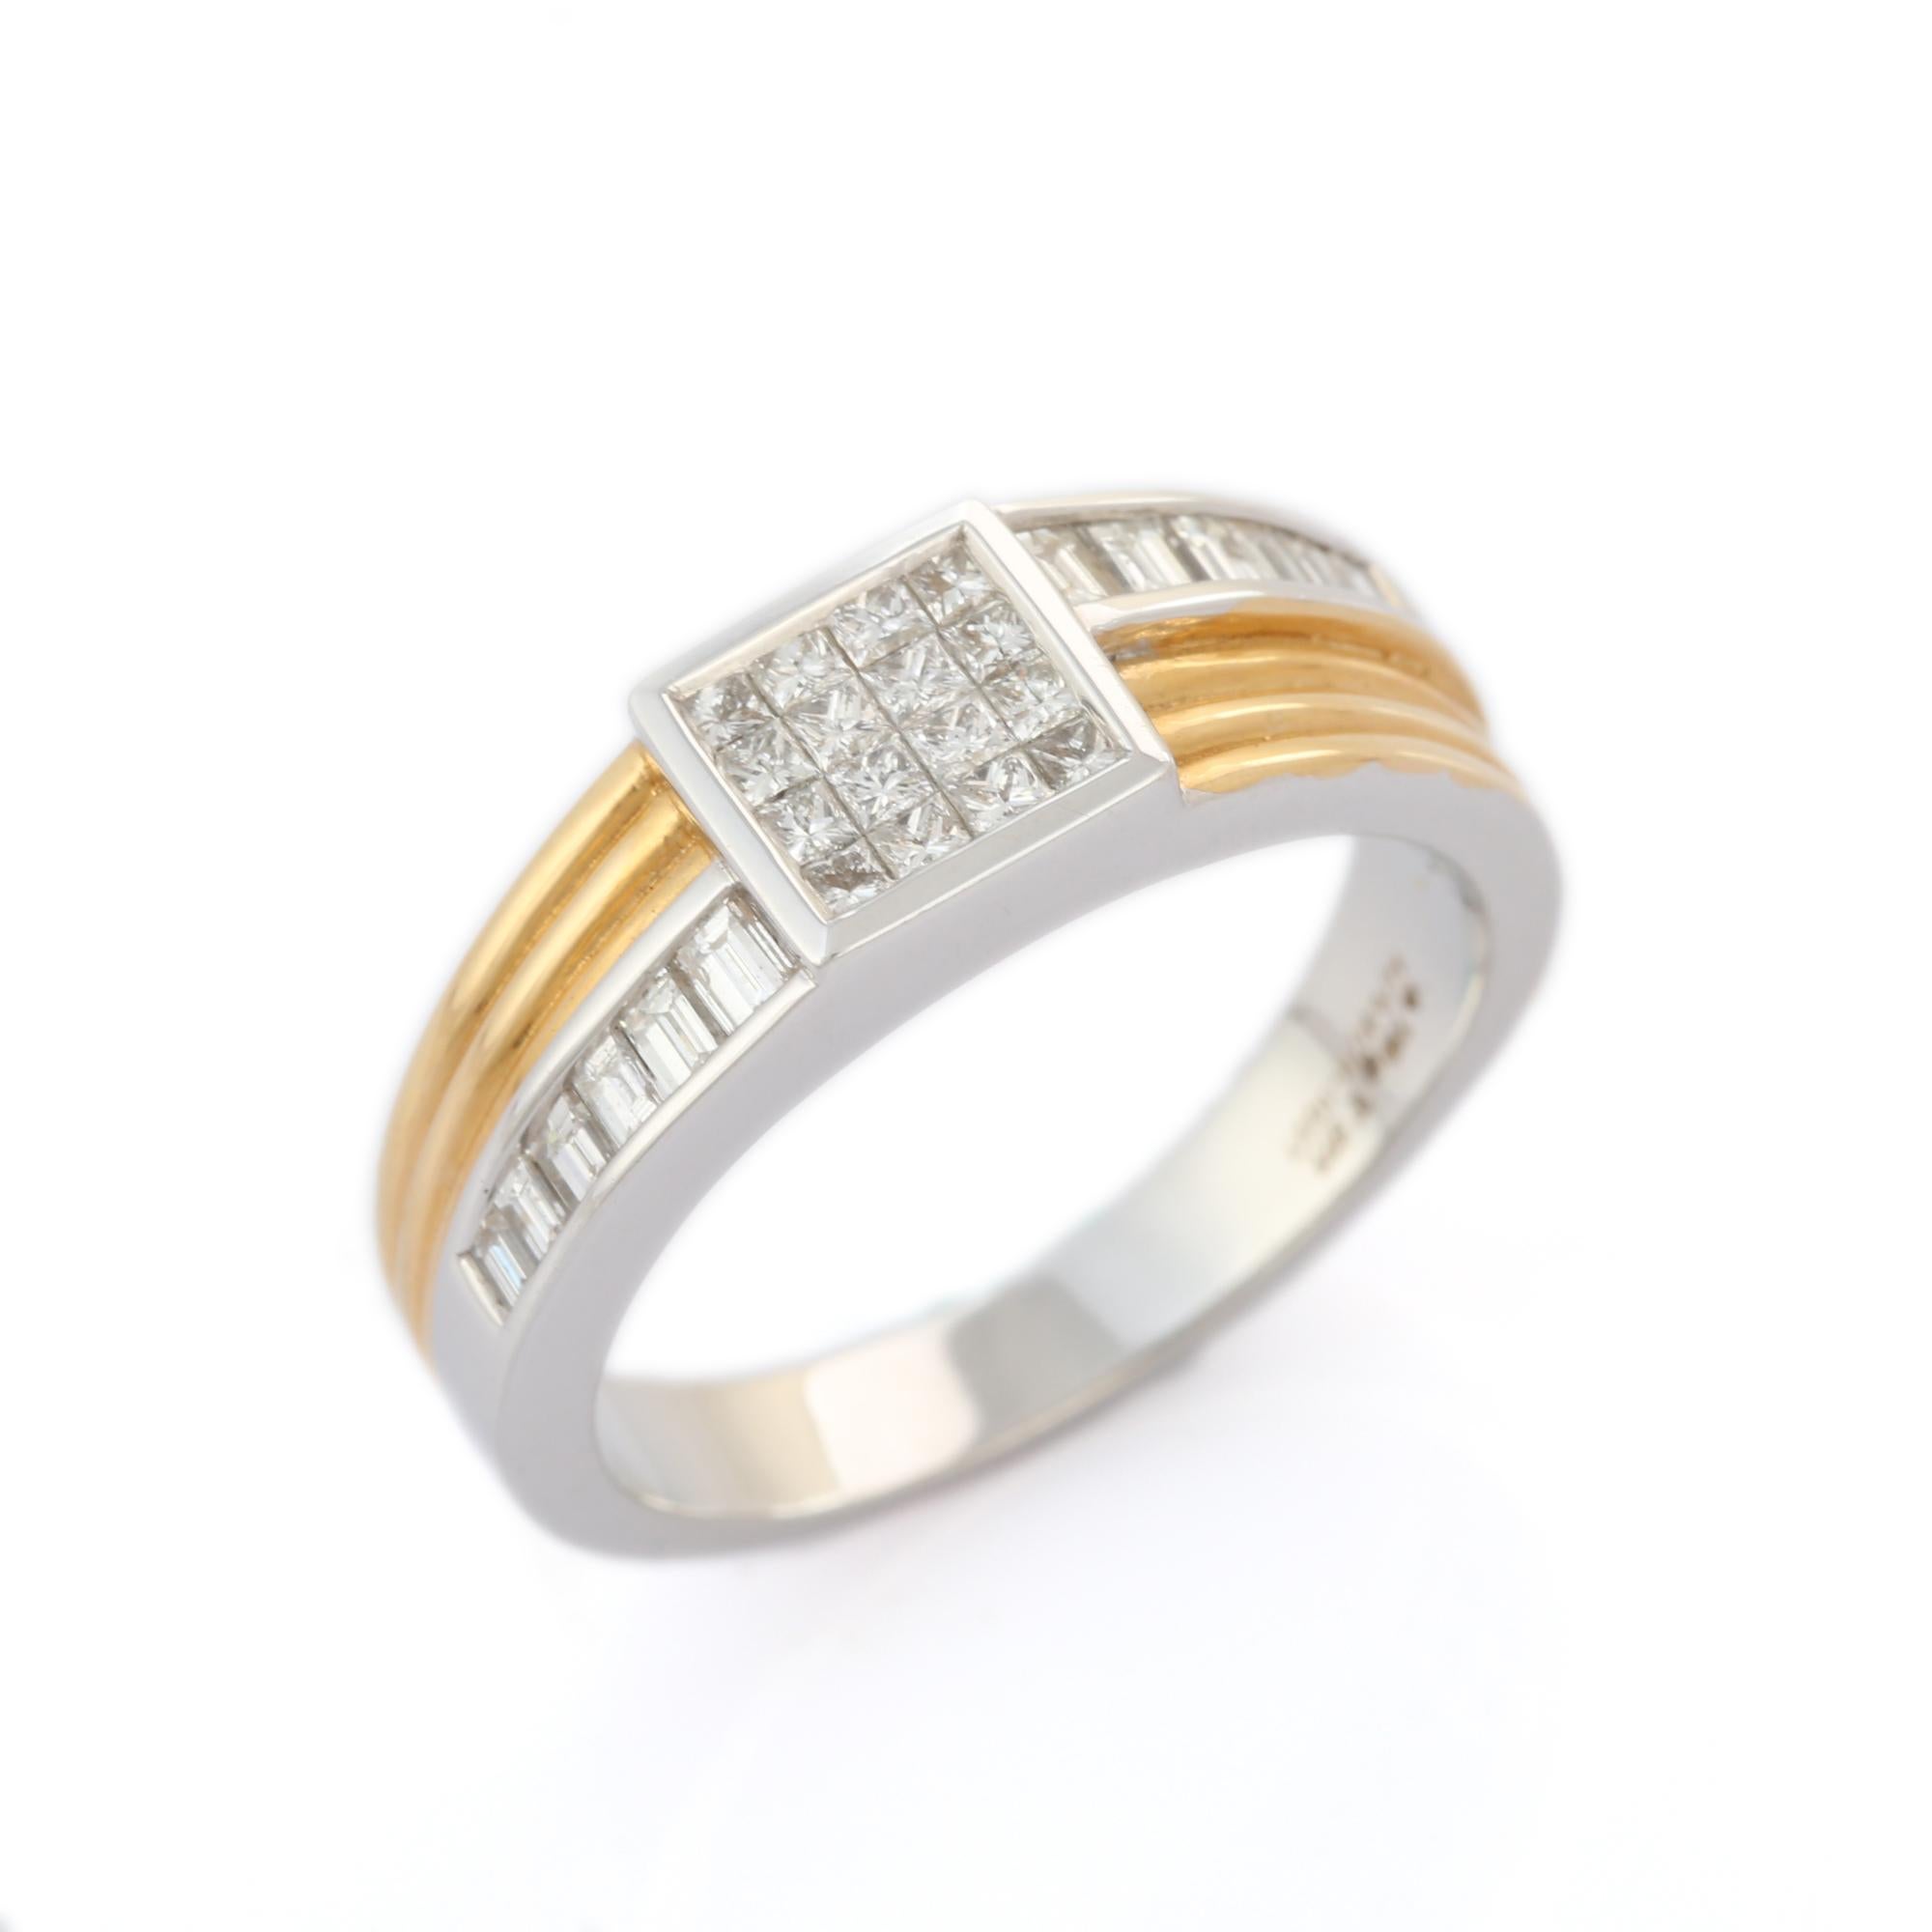 For Sale:  18K Yellow White Gold Men's Diamond Engagement Ring Gift 7